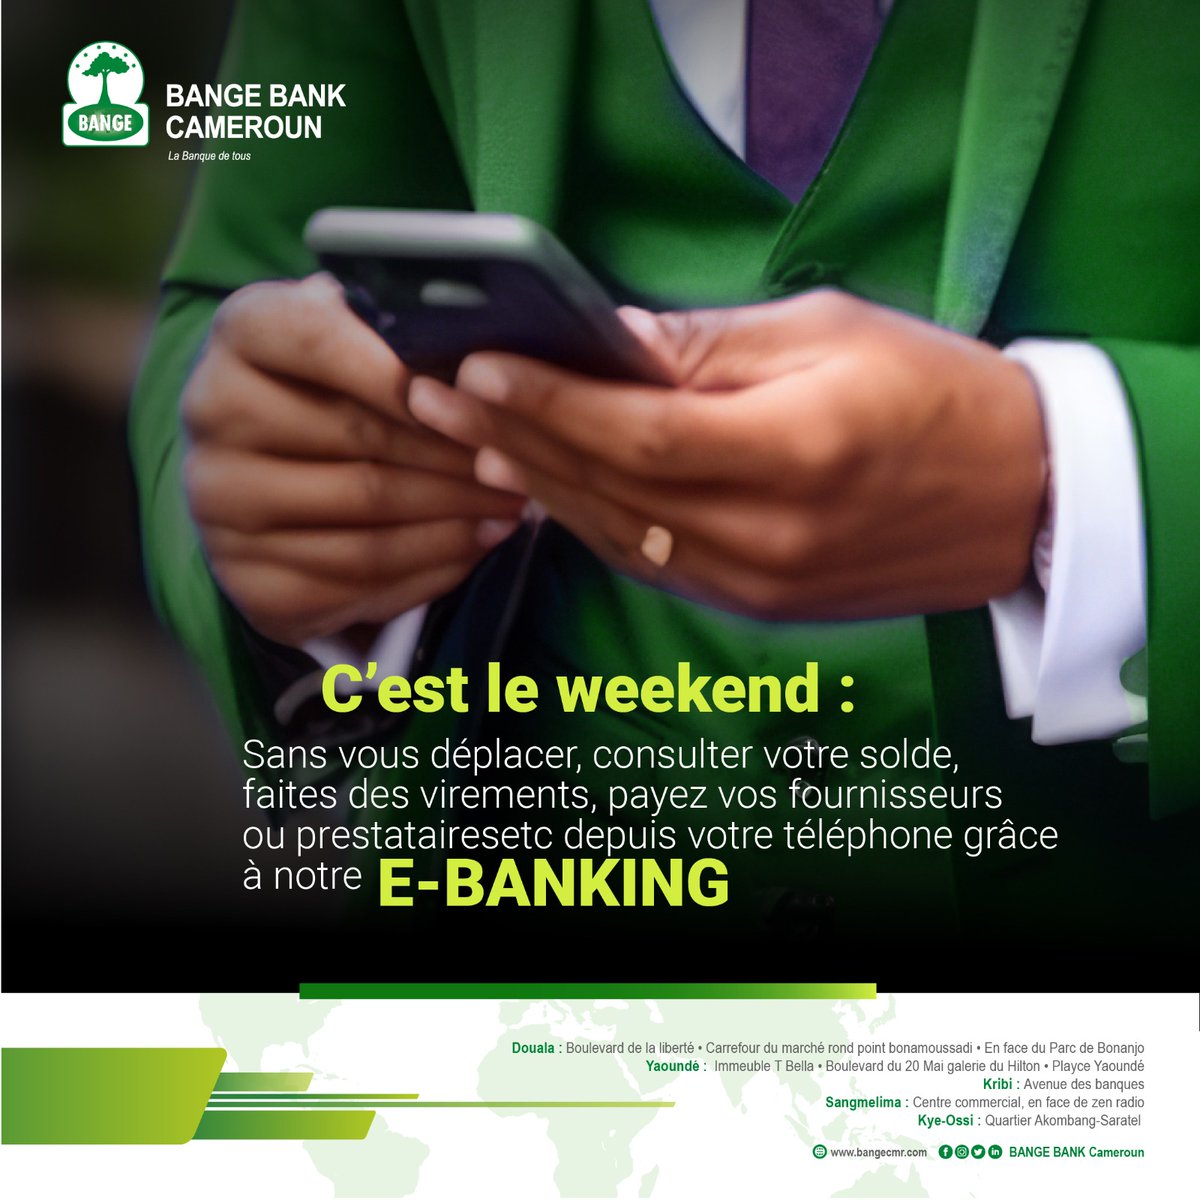 C'est le week-end, limitez vos déplacements grâce à notre E-Banking.

#BANGEBANKCAMEROUN
#Ebanking